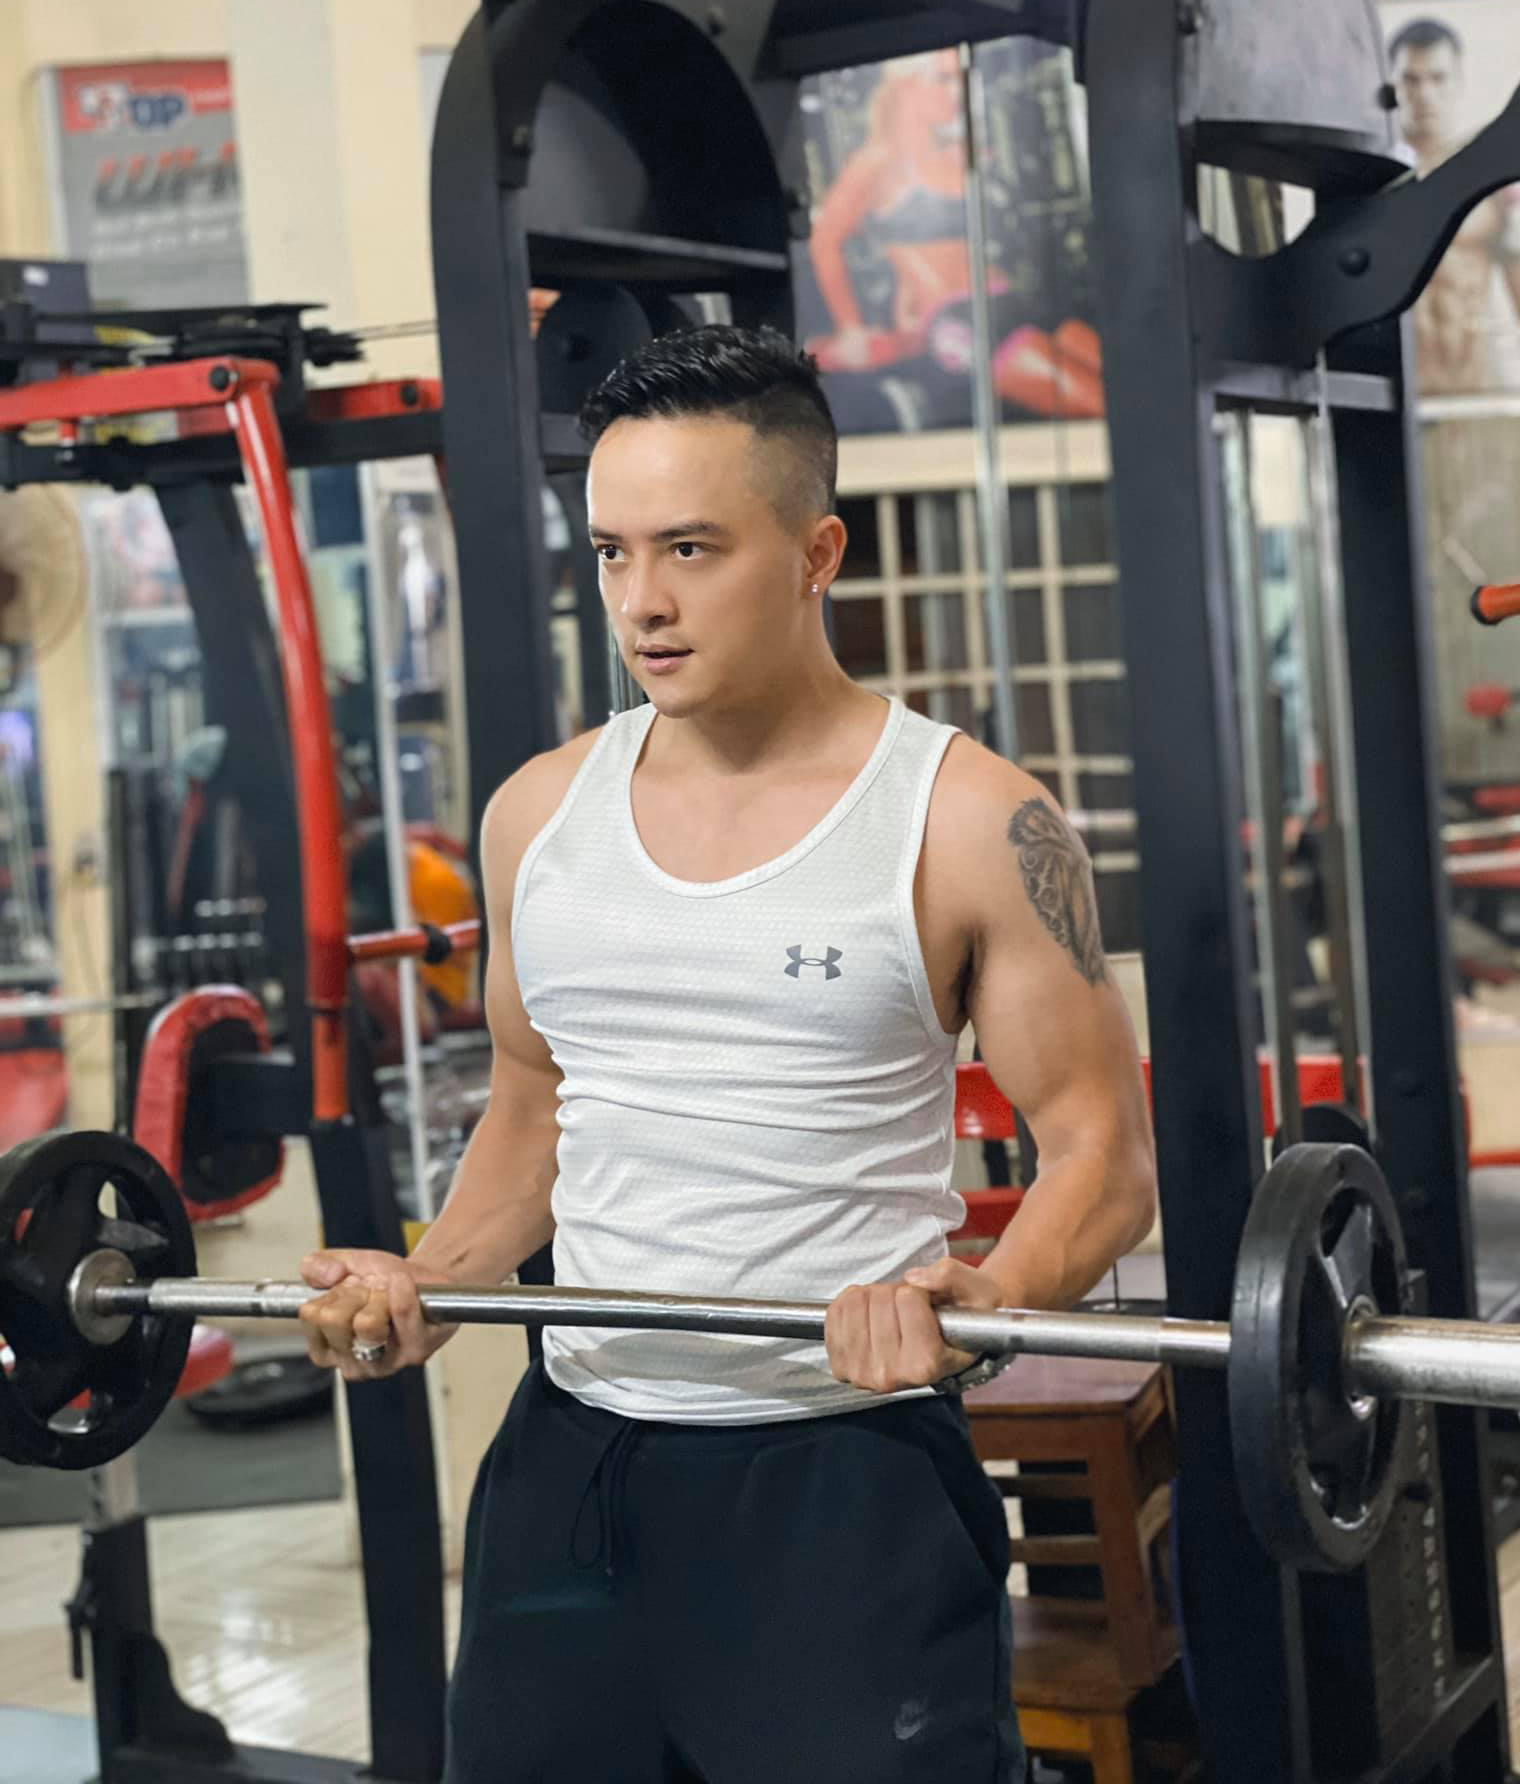 Cao Thái Sơn duy trì tập gym mỗi ngày suốt nhiều năm qua